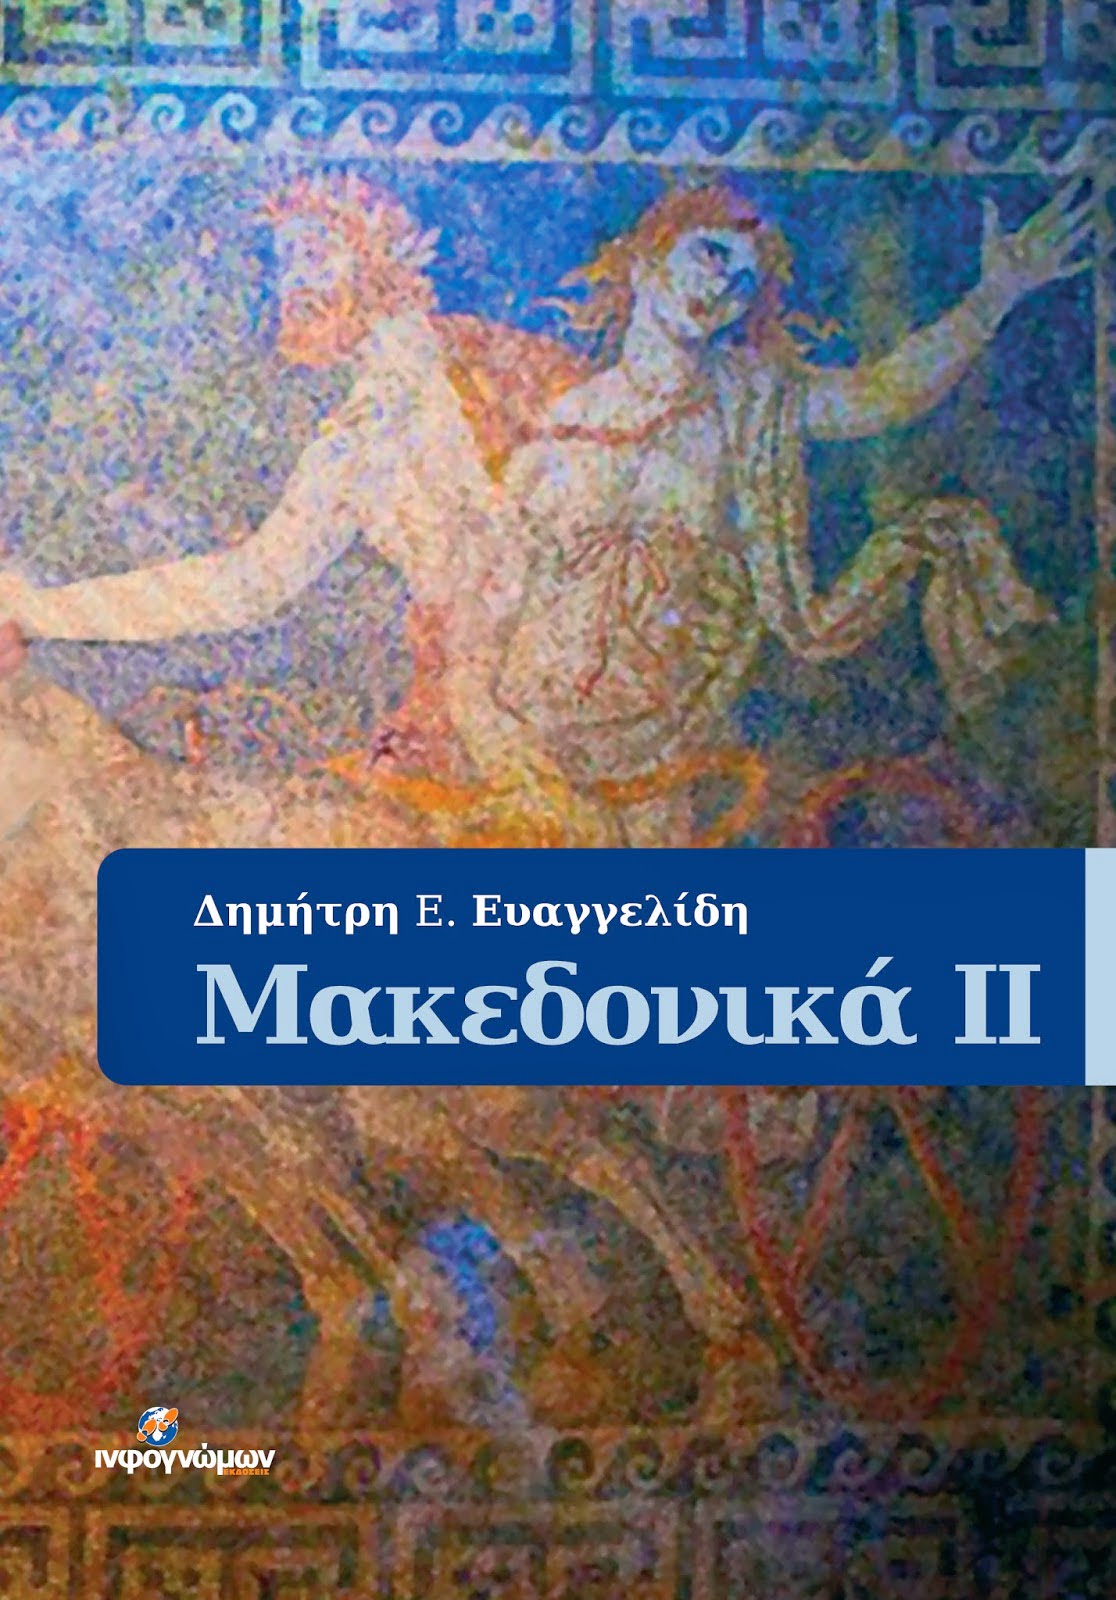 Στα βιβλιοπωλεία το νέο βιβλίο του Δημήτρη Ευαγγελίδη “Μακεδονικά ΙΙ”